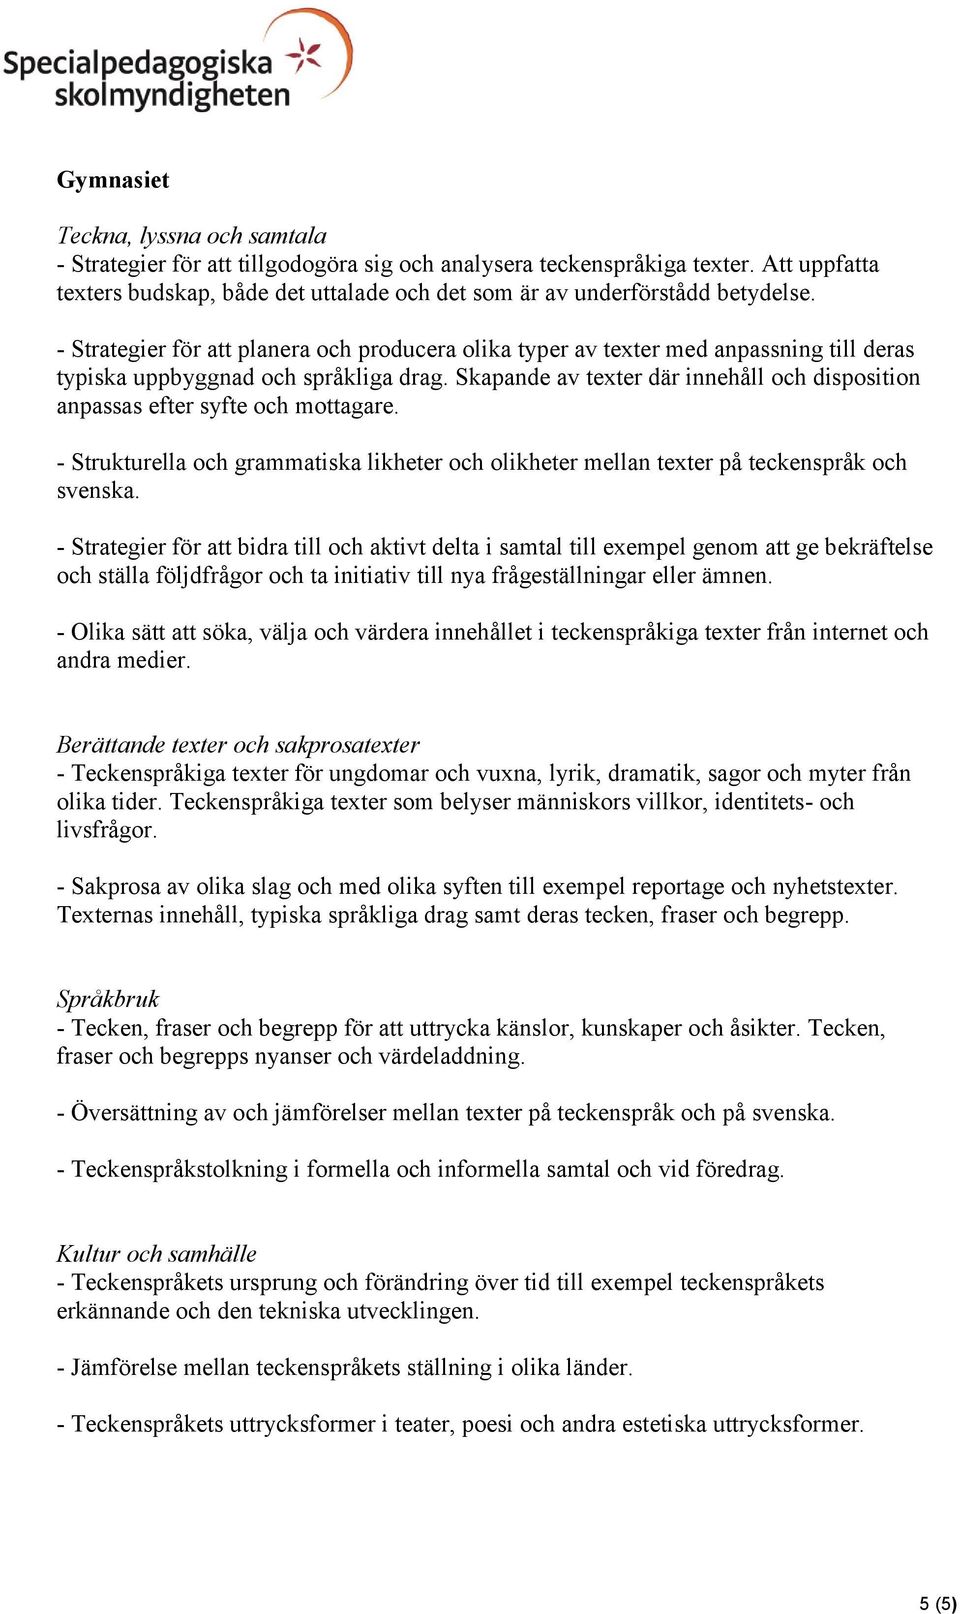 Skapande av texter där innehåll och disposition anpassas efter syfte och mottagare. - Strukturella och grammatiska likheter och olikheter mellan texter på teckenspråk och svenska.